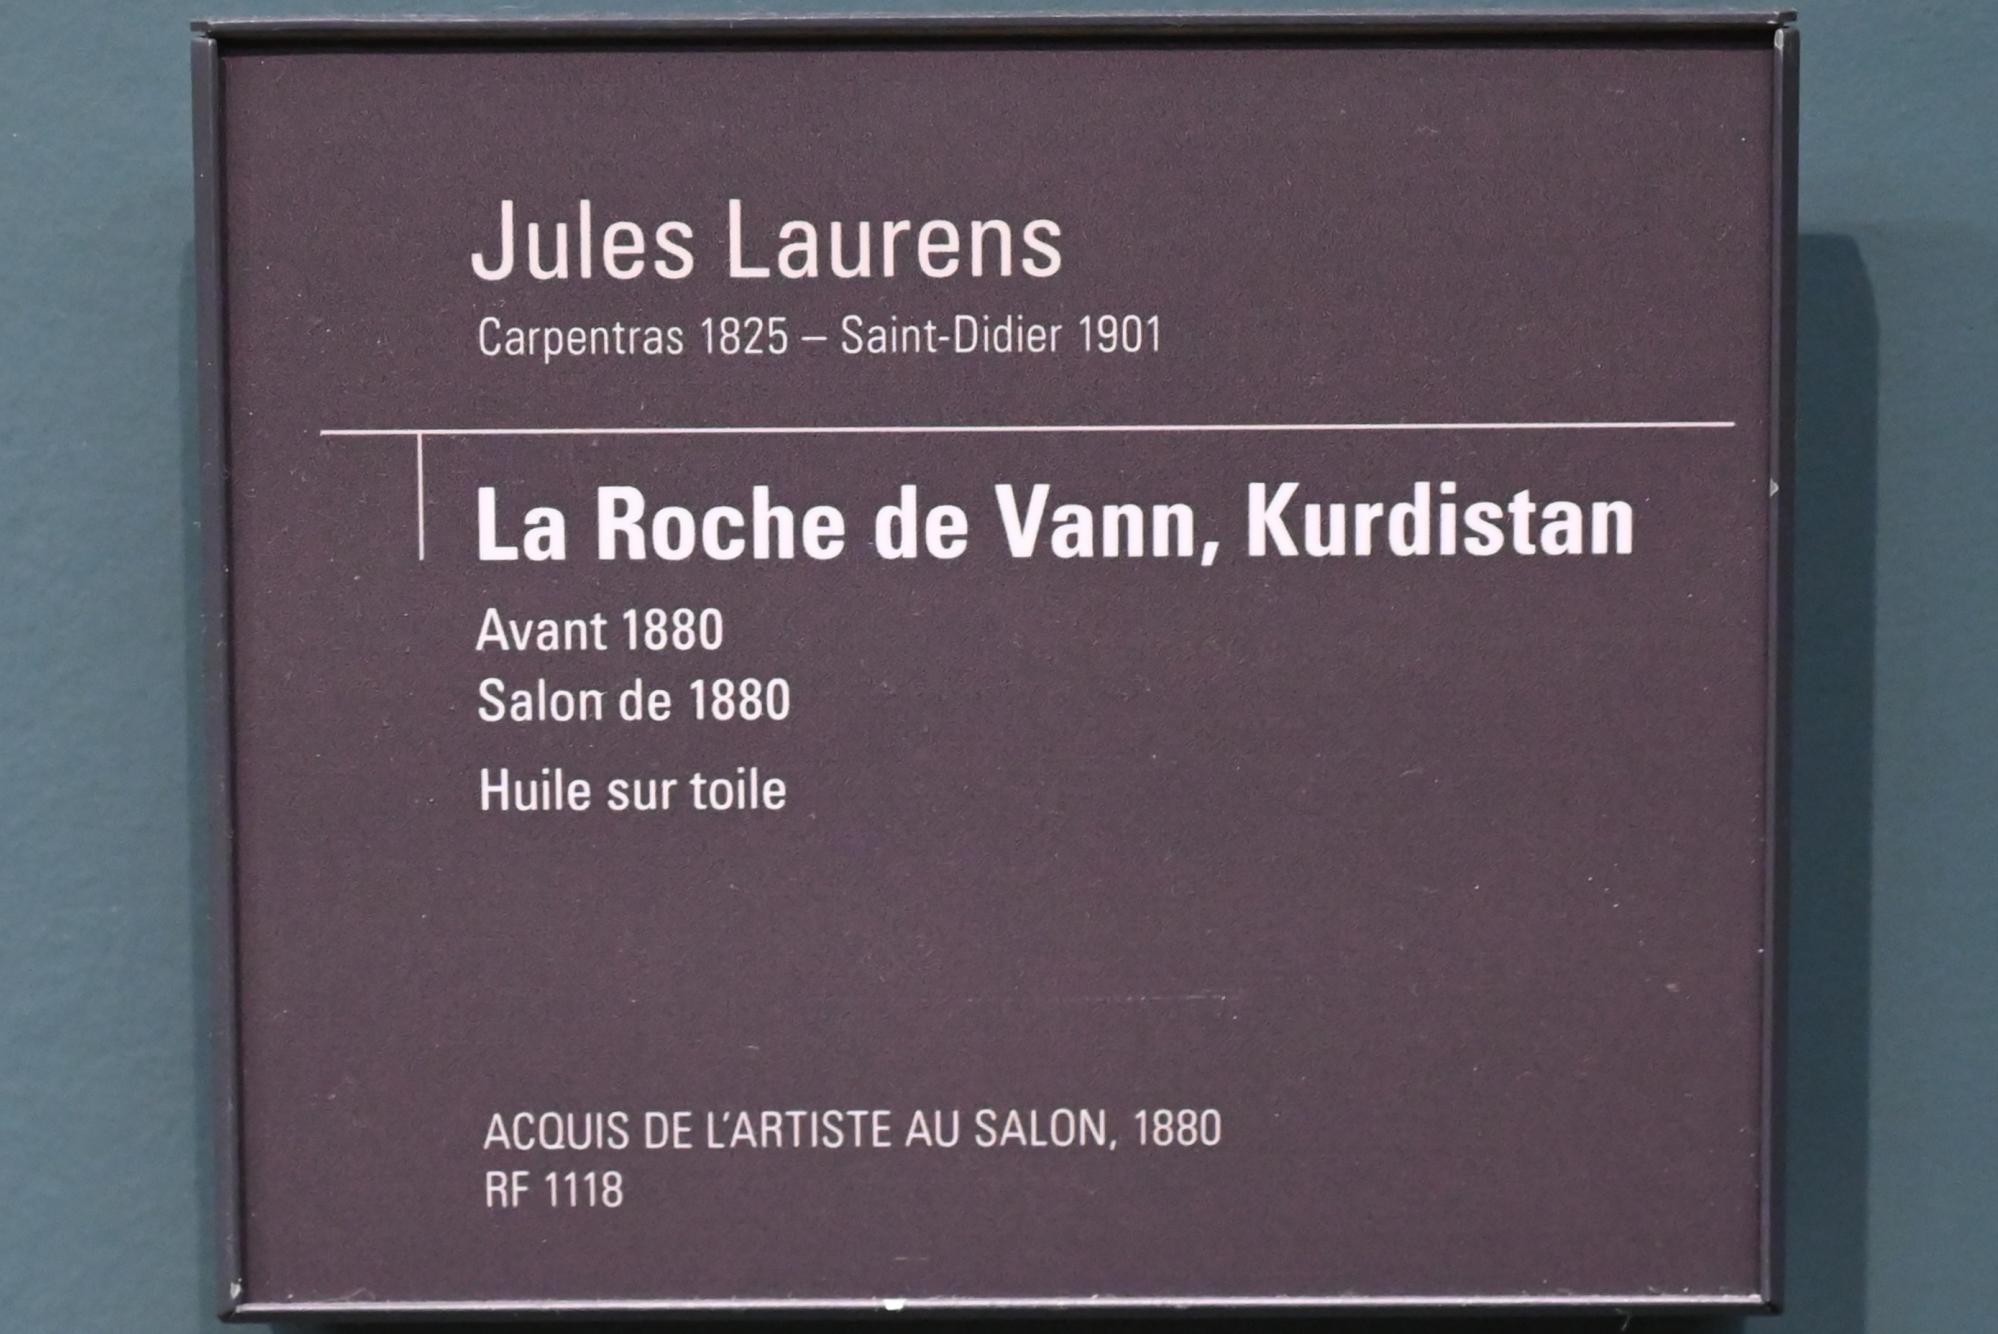 Jules Laurens (1879), Der Felsen von Vann (Kurdistan), Paris, Musée d’Orsay, vor 1880, Bild 2/2